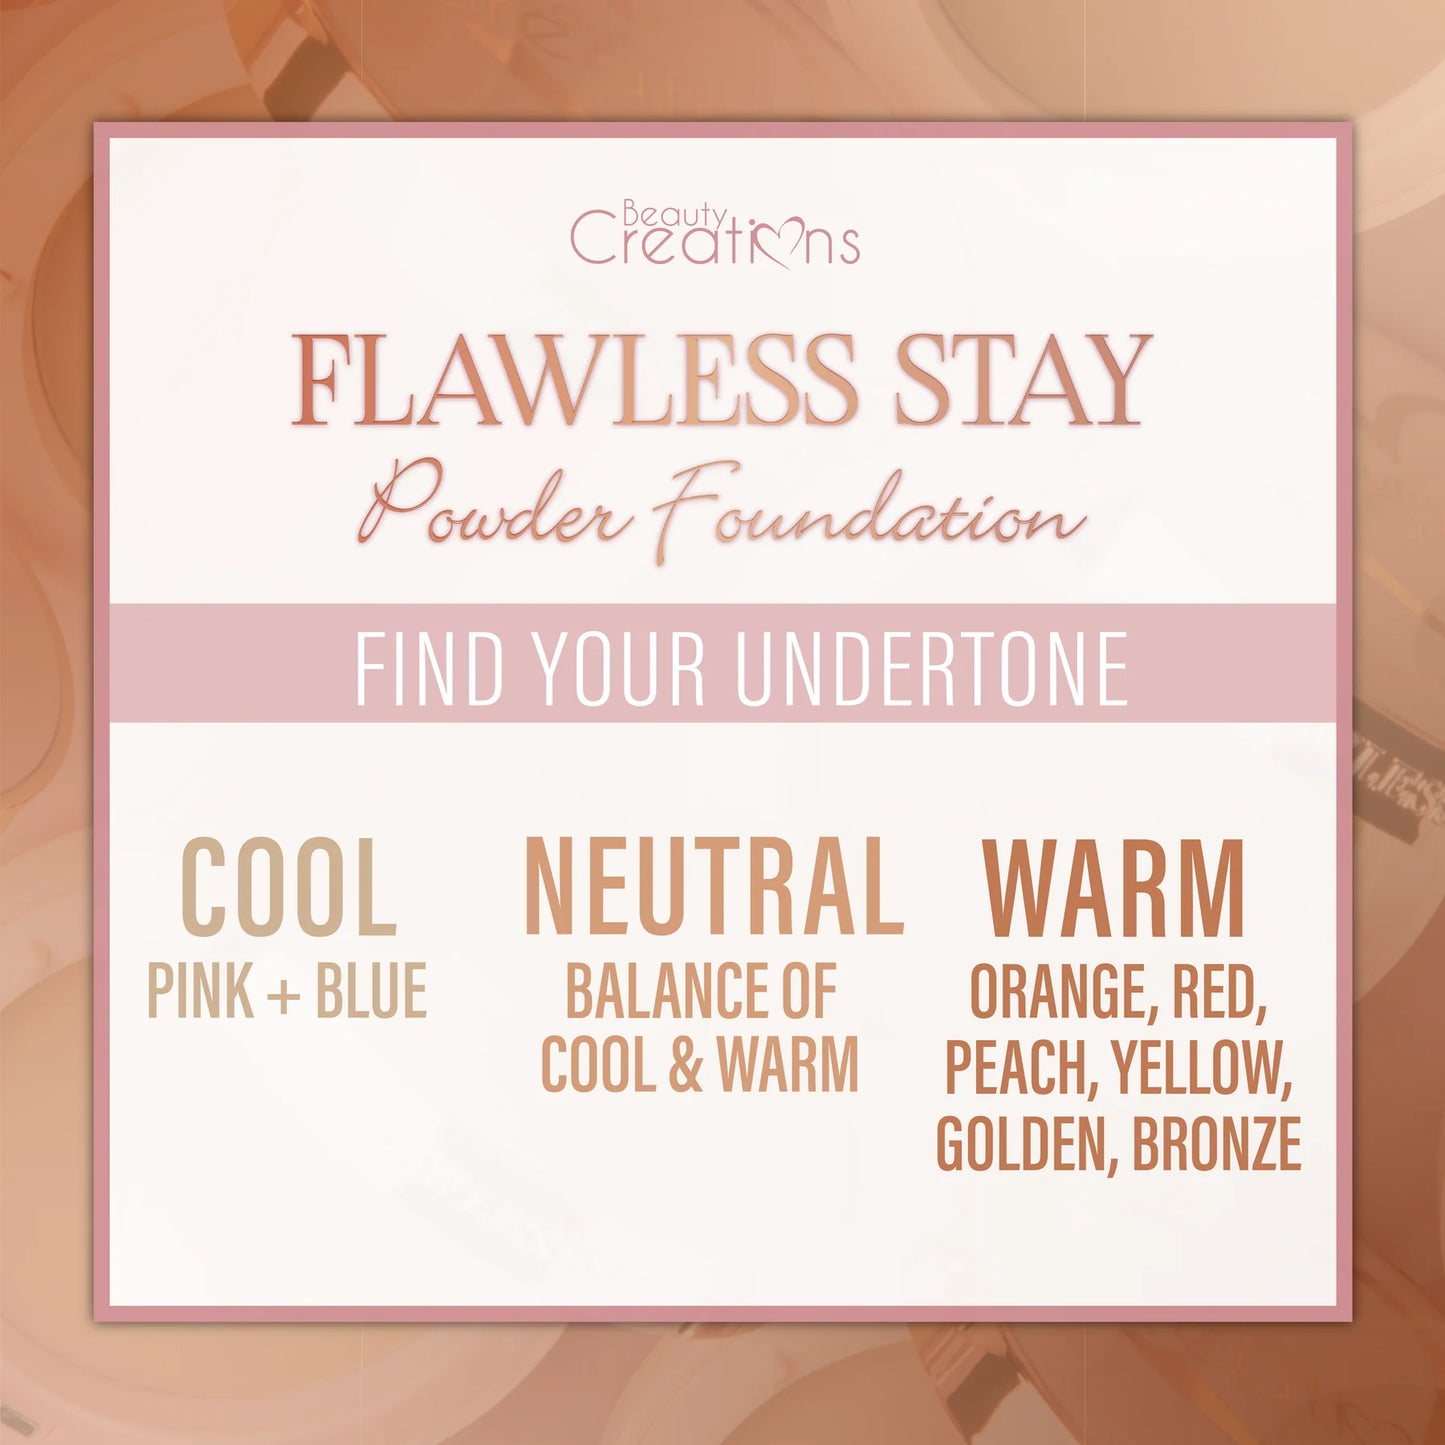 6.0 - Flawless Stay Powder Foundation